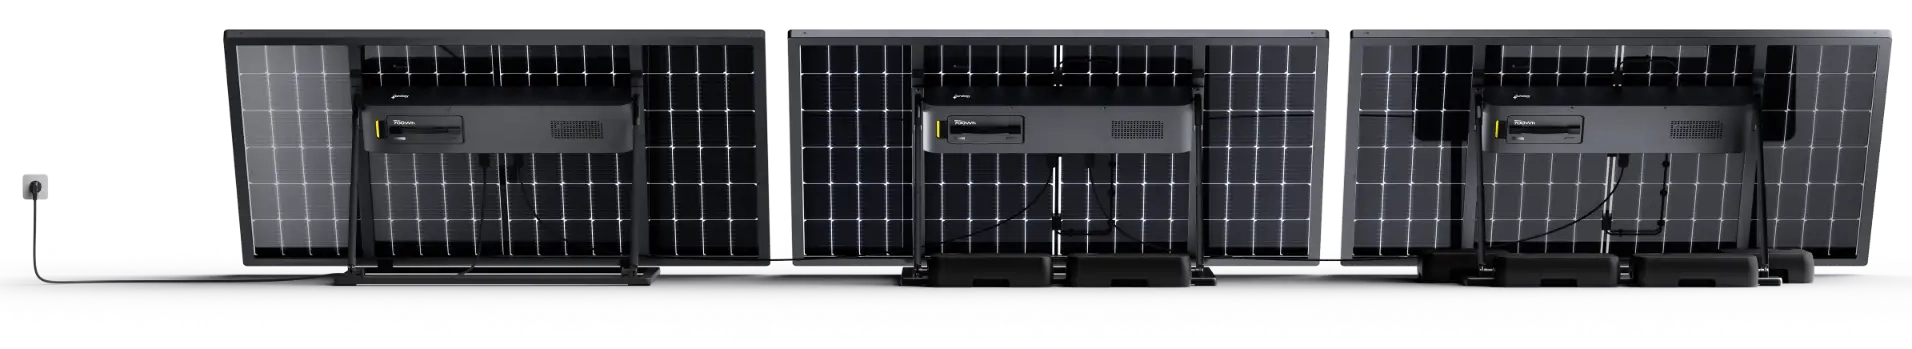 panneaux solaires photovoltaïques plug and play avec batteries branchées ensemble vue de dos de la marque Sunology PLAYMax